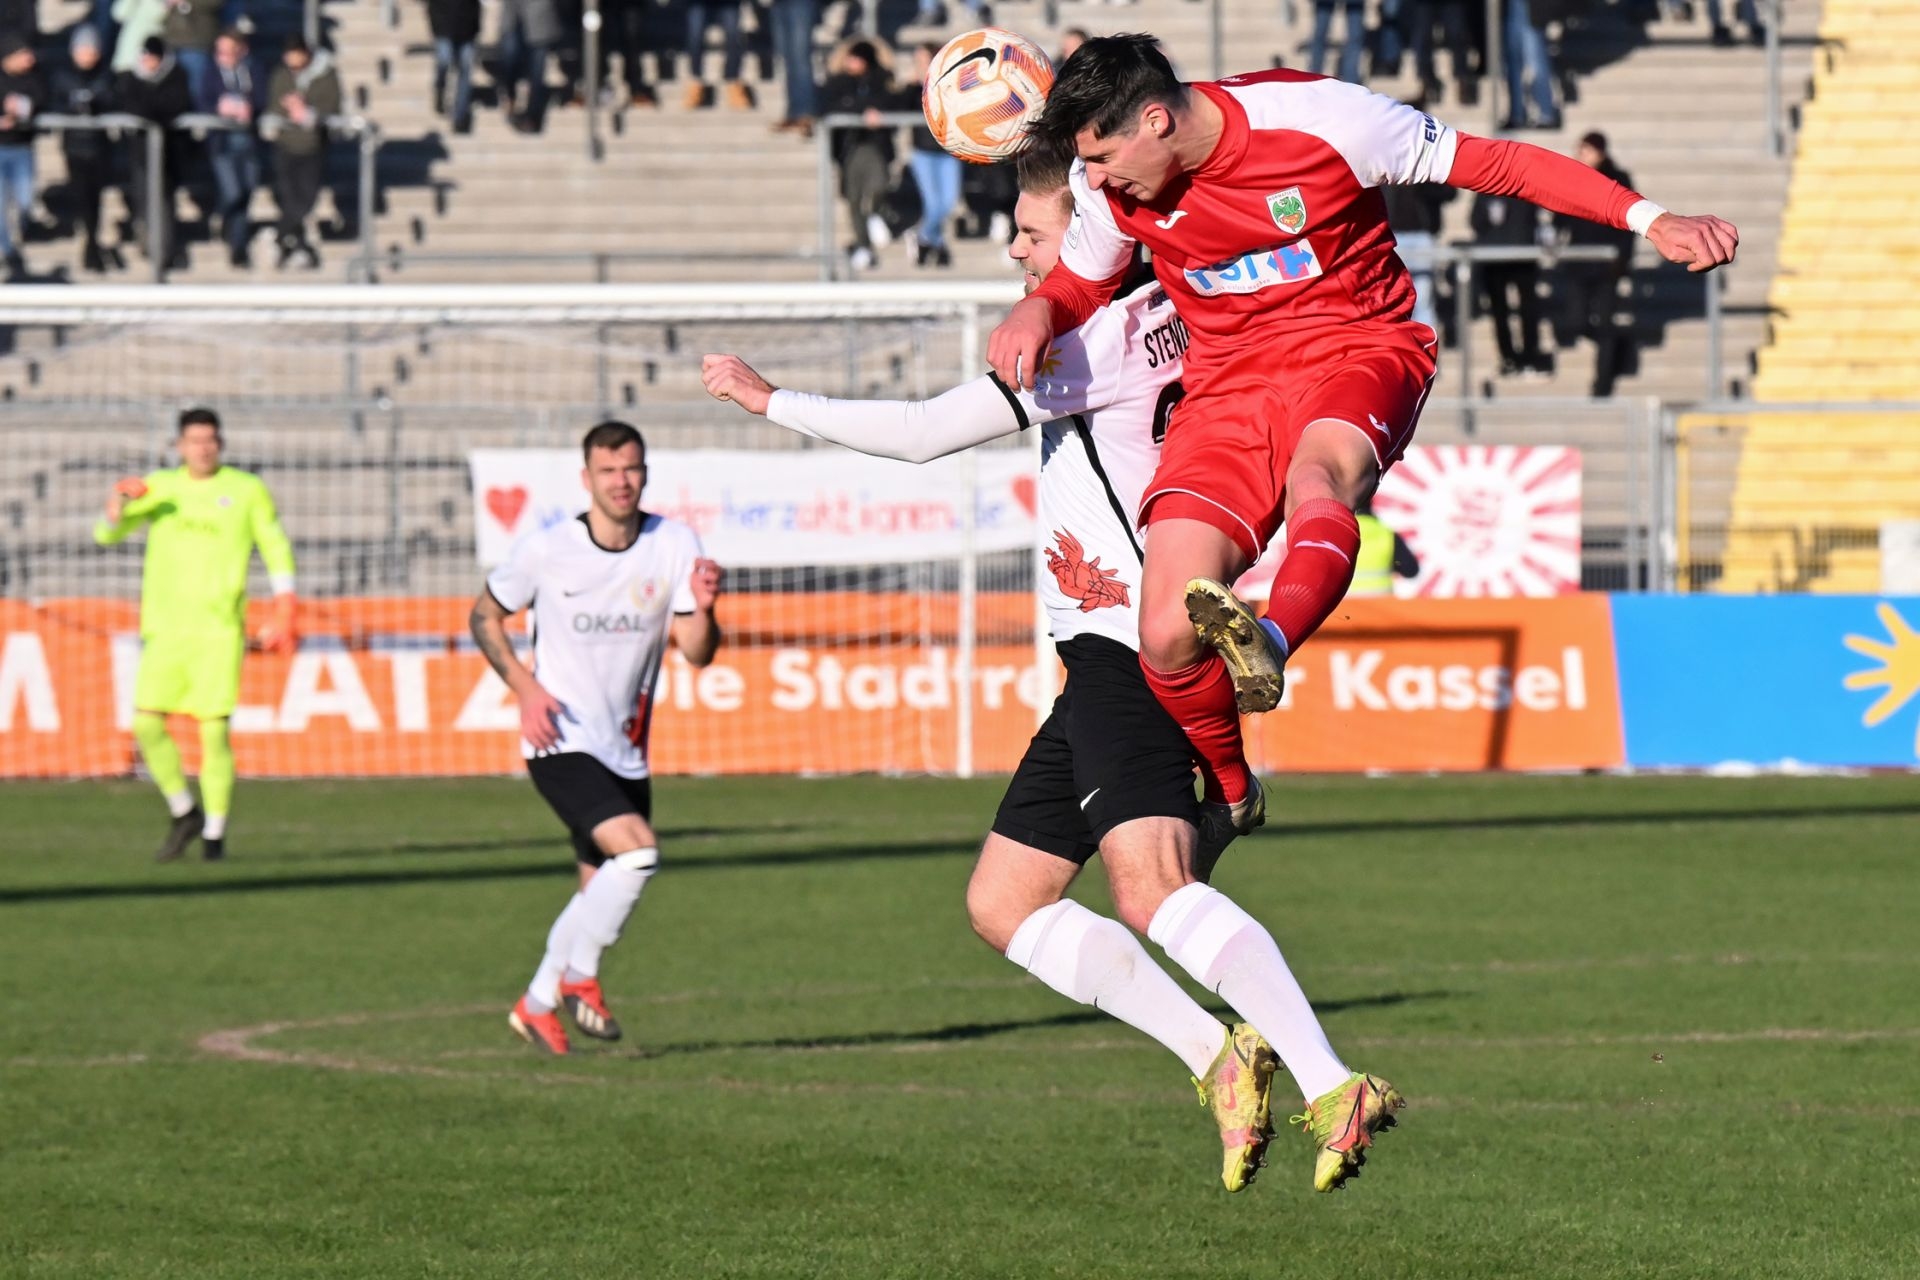 Saison 2022/23, Spieltag 2, KSV Hessen Kassel, Wormatia Worms, Endstand 1:1